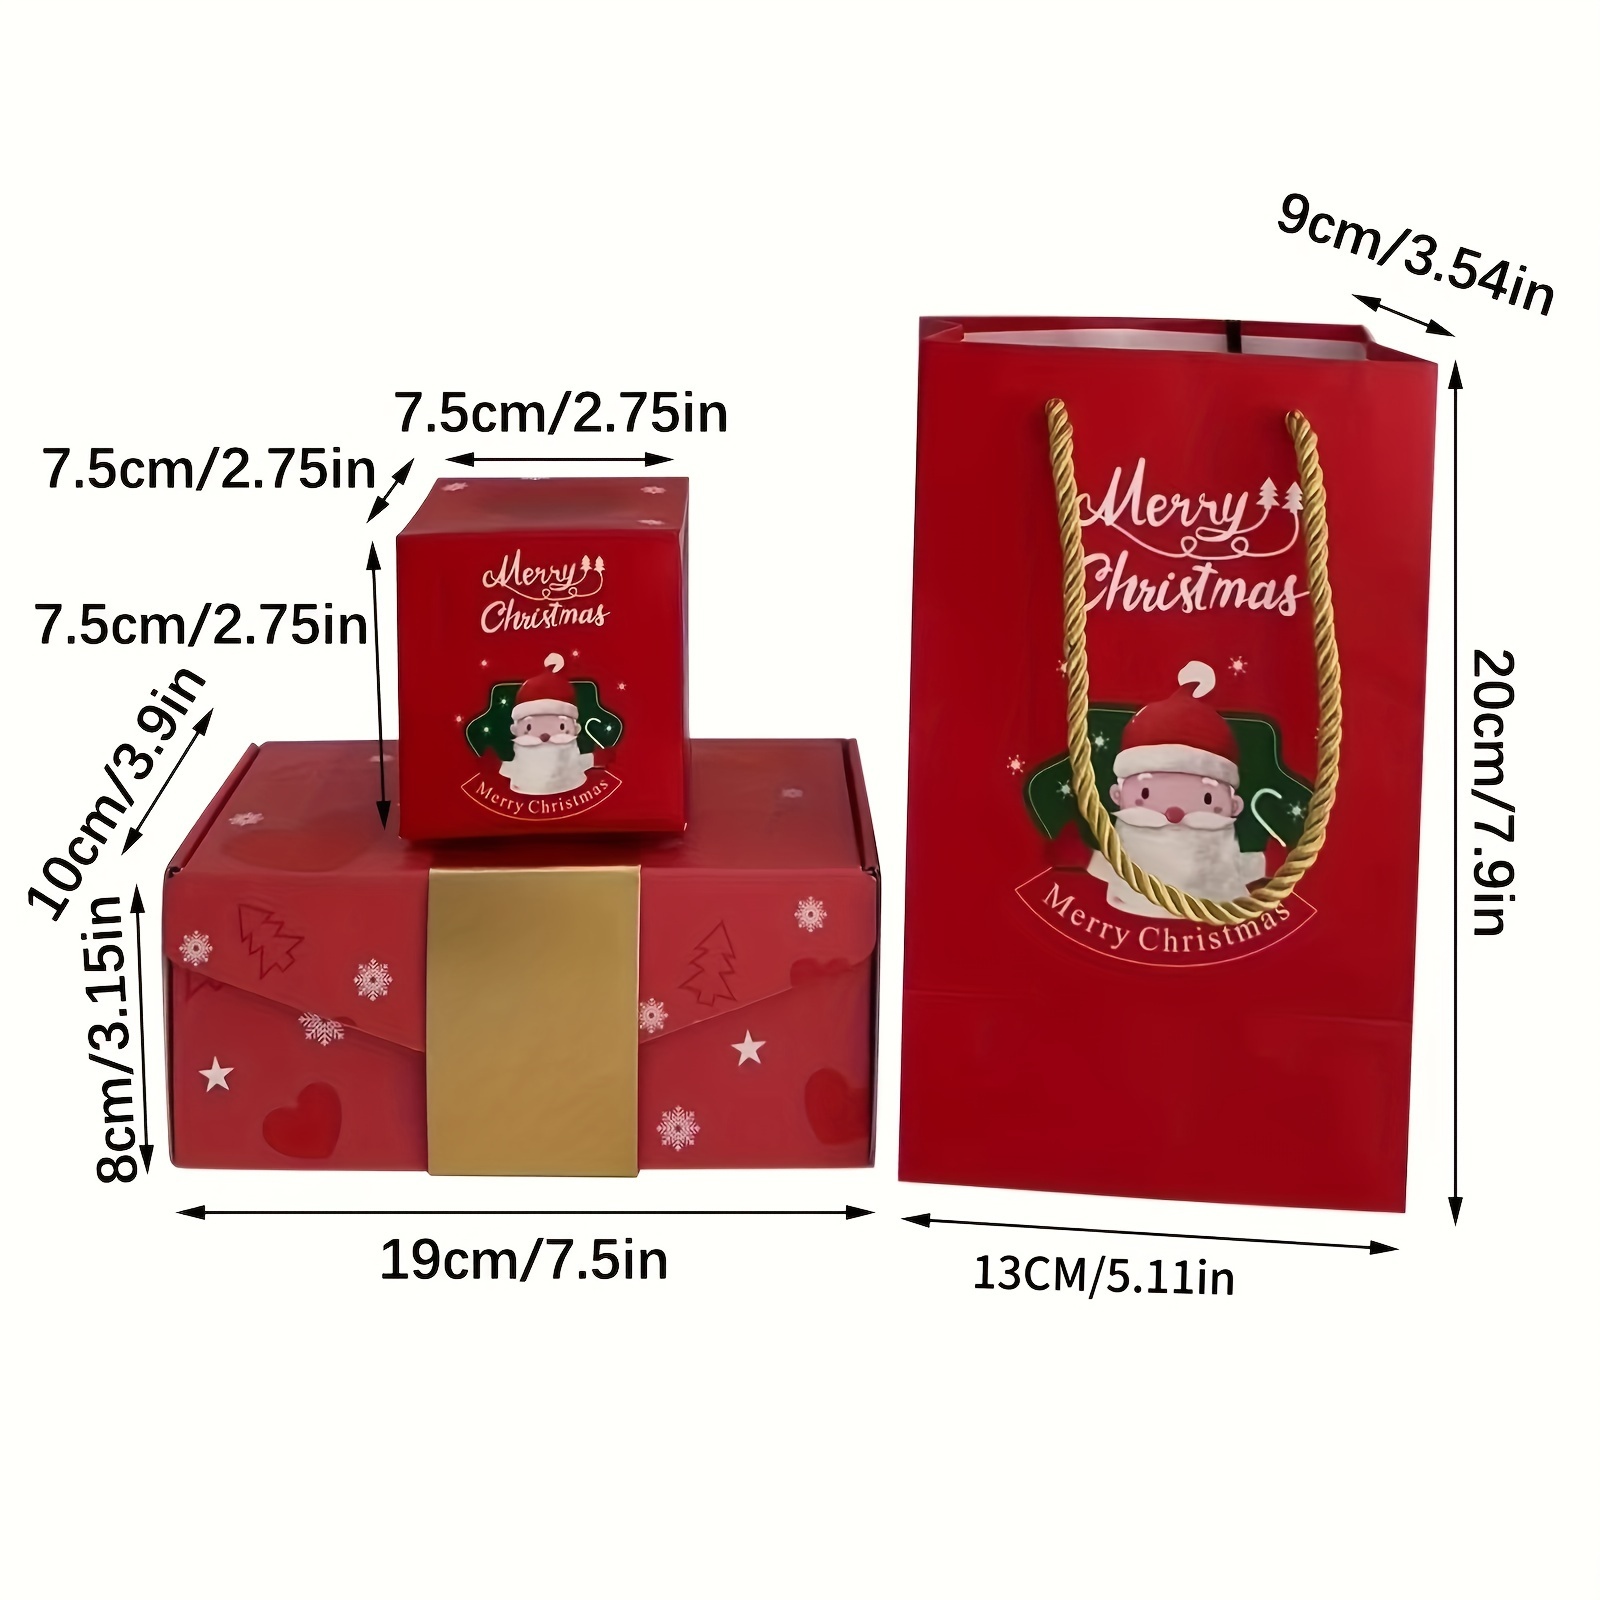 Caja de regalo sorpresa – Creando la caja de regalo más sorprendente  explosión para dinero, cajas sorpresa de los mejores deseos para Navidad